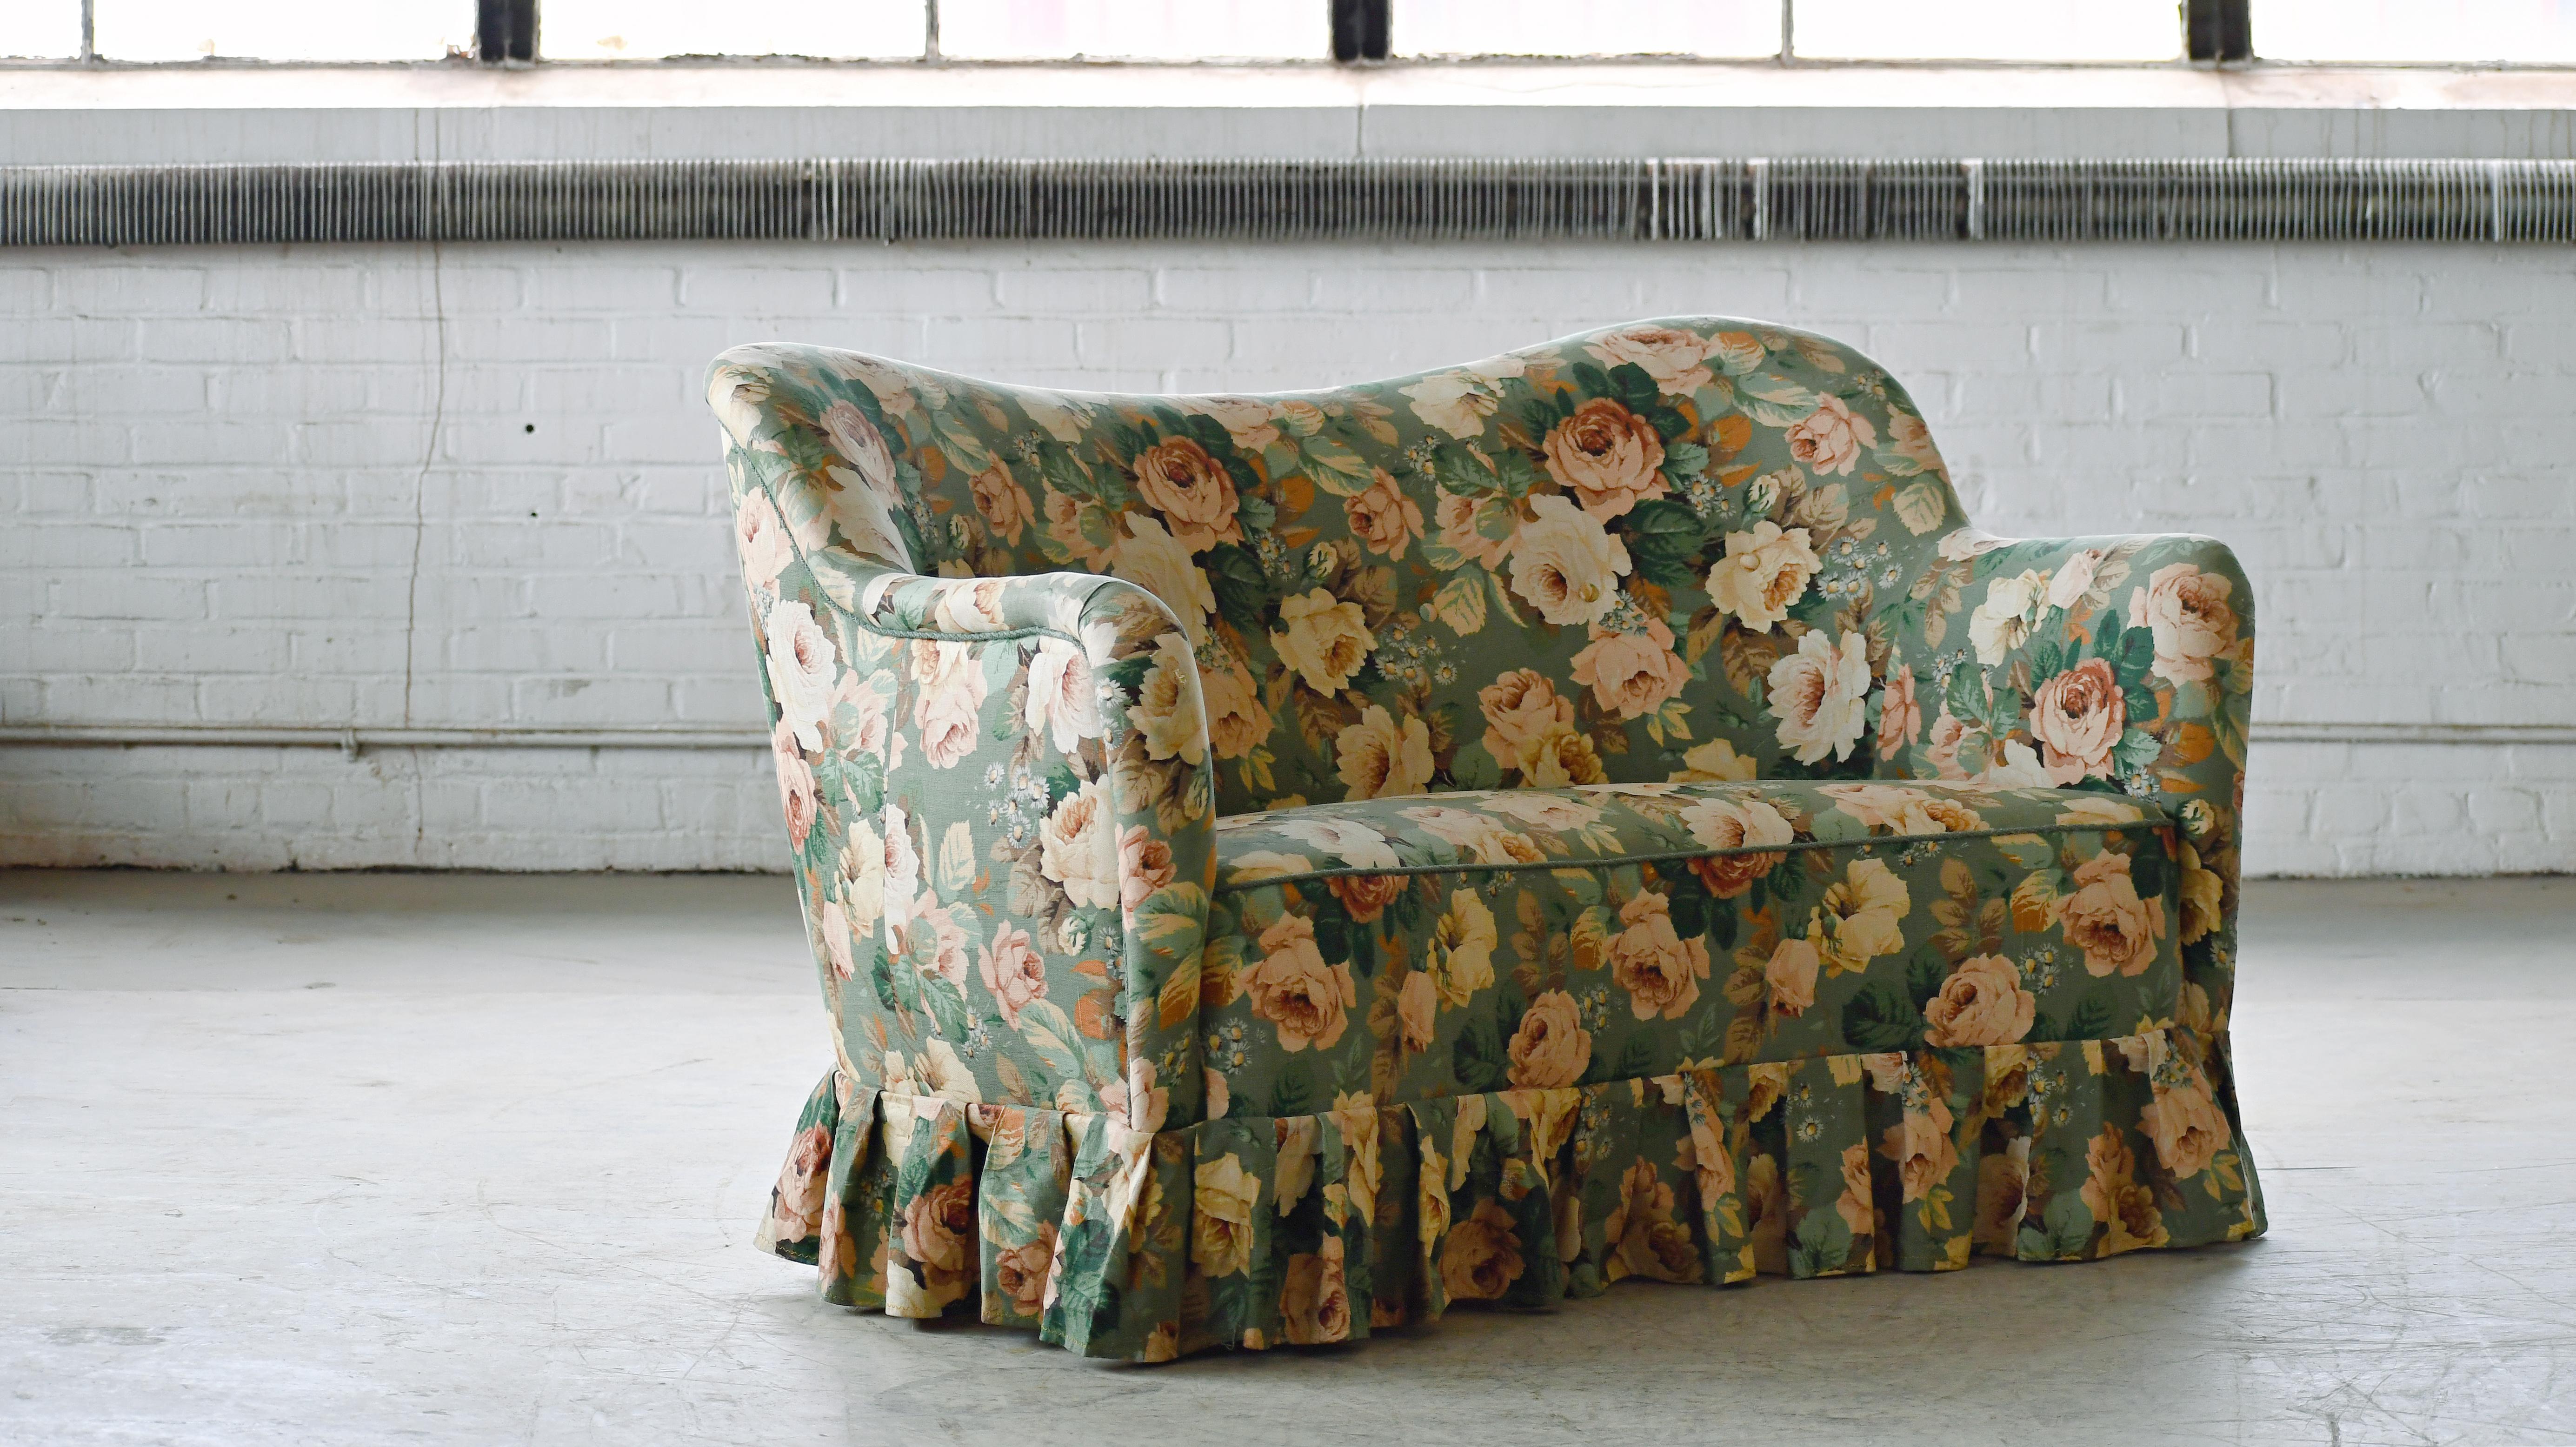 Sehr elegantes Sofa im Finn Juhl-Stil, hergestellt von Slagelse Mobelvaerk, Dänemark, irgendwann in den 1940er Jahren. Die Linien und Proportionen dieses Entwurfs sind einfach perfekt. Slagelse war ein Hersteller für Finn Juhl, und es wird oft